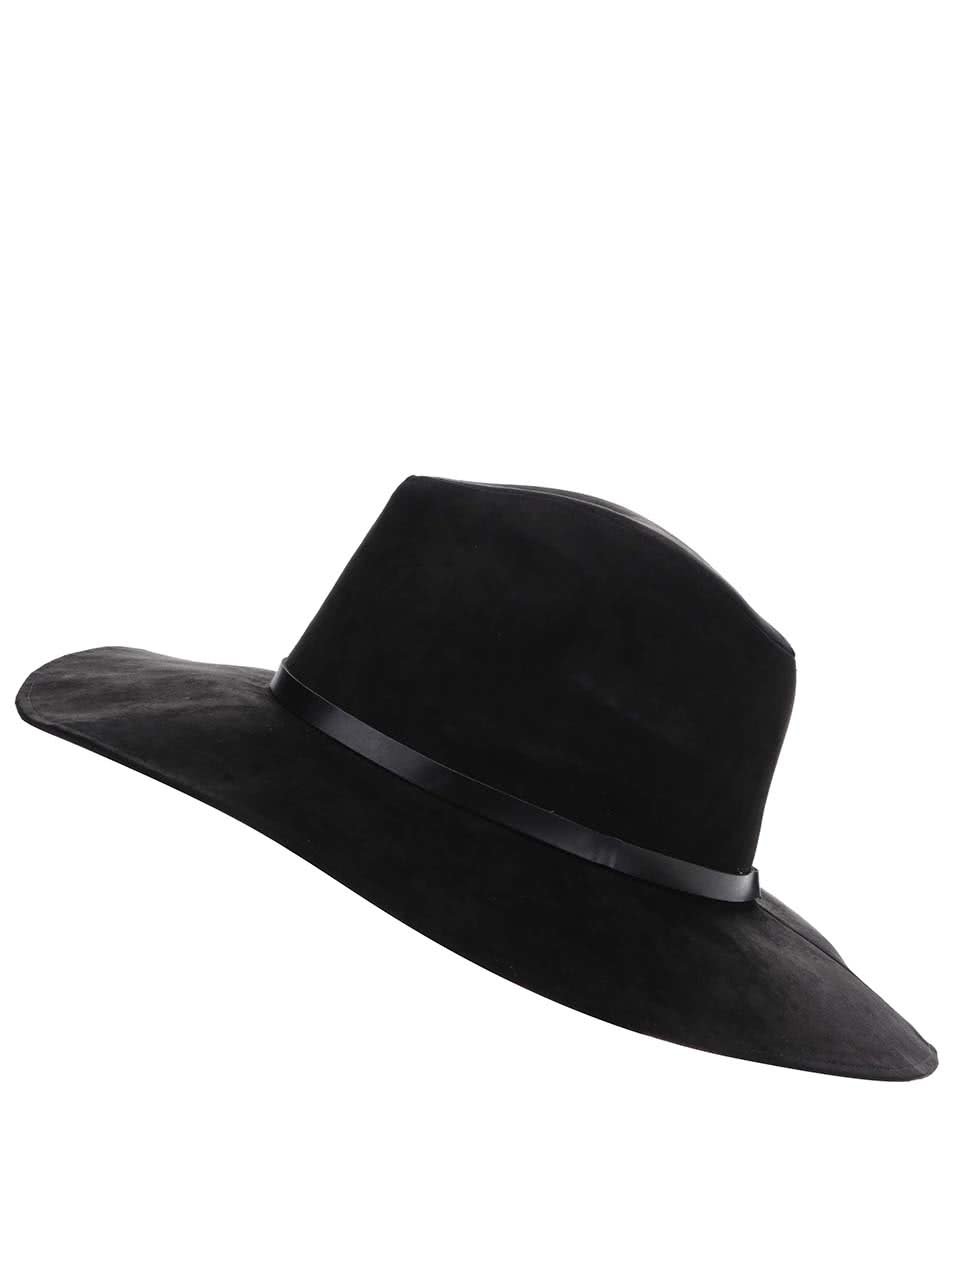 Černý klobouk v semišové úpravě Pieces Bella